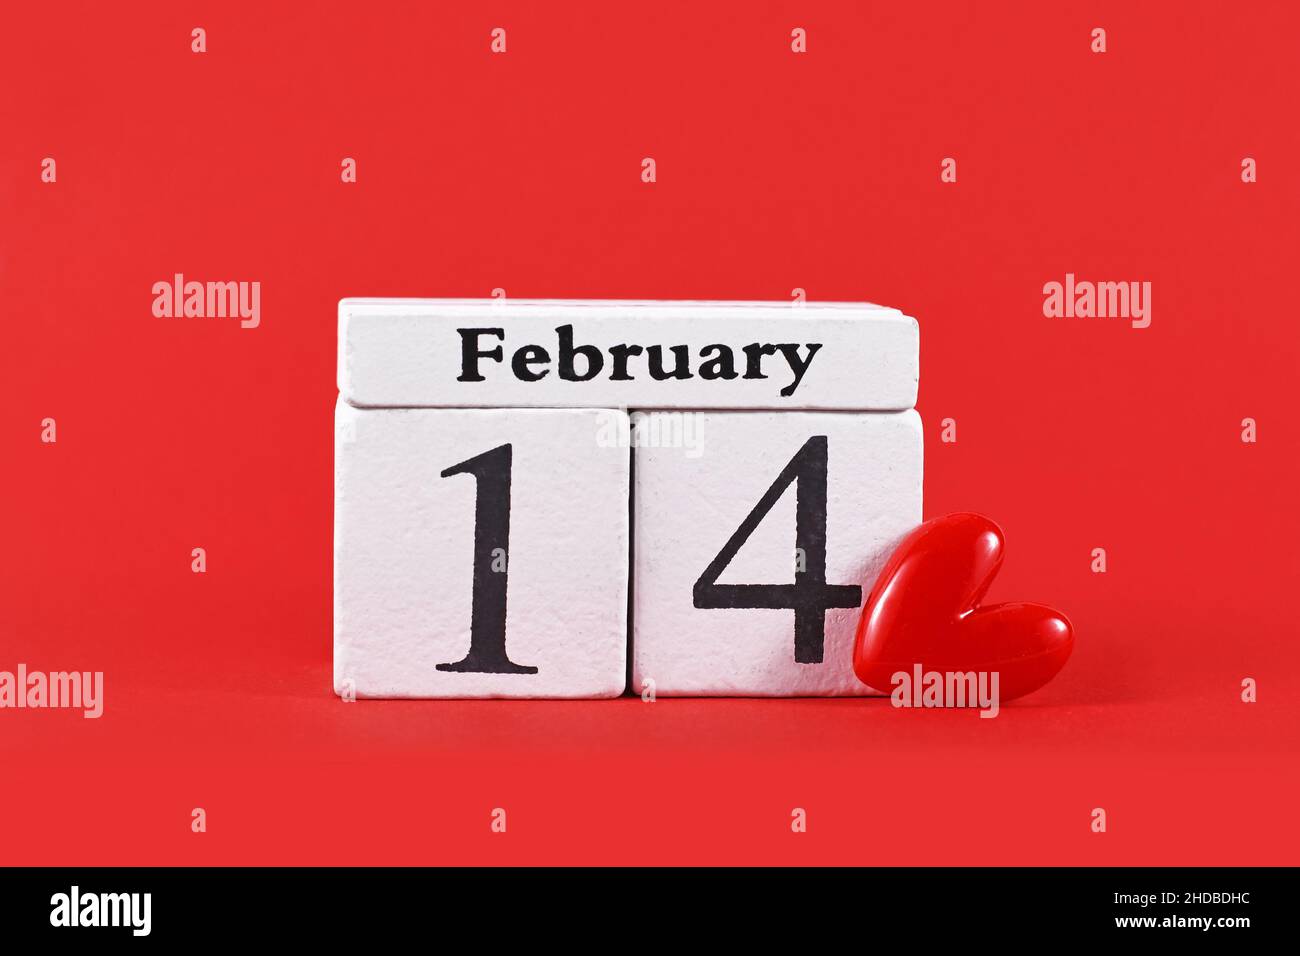 Kalender zeigt das Datum des Valentinstag Februar 14th neben dem roten Herzen Stockfoto